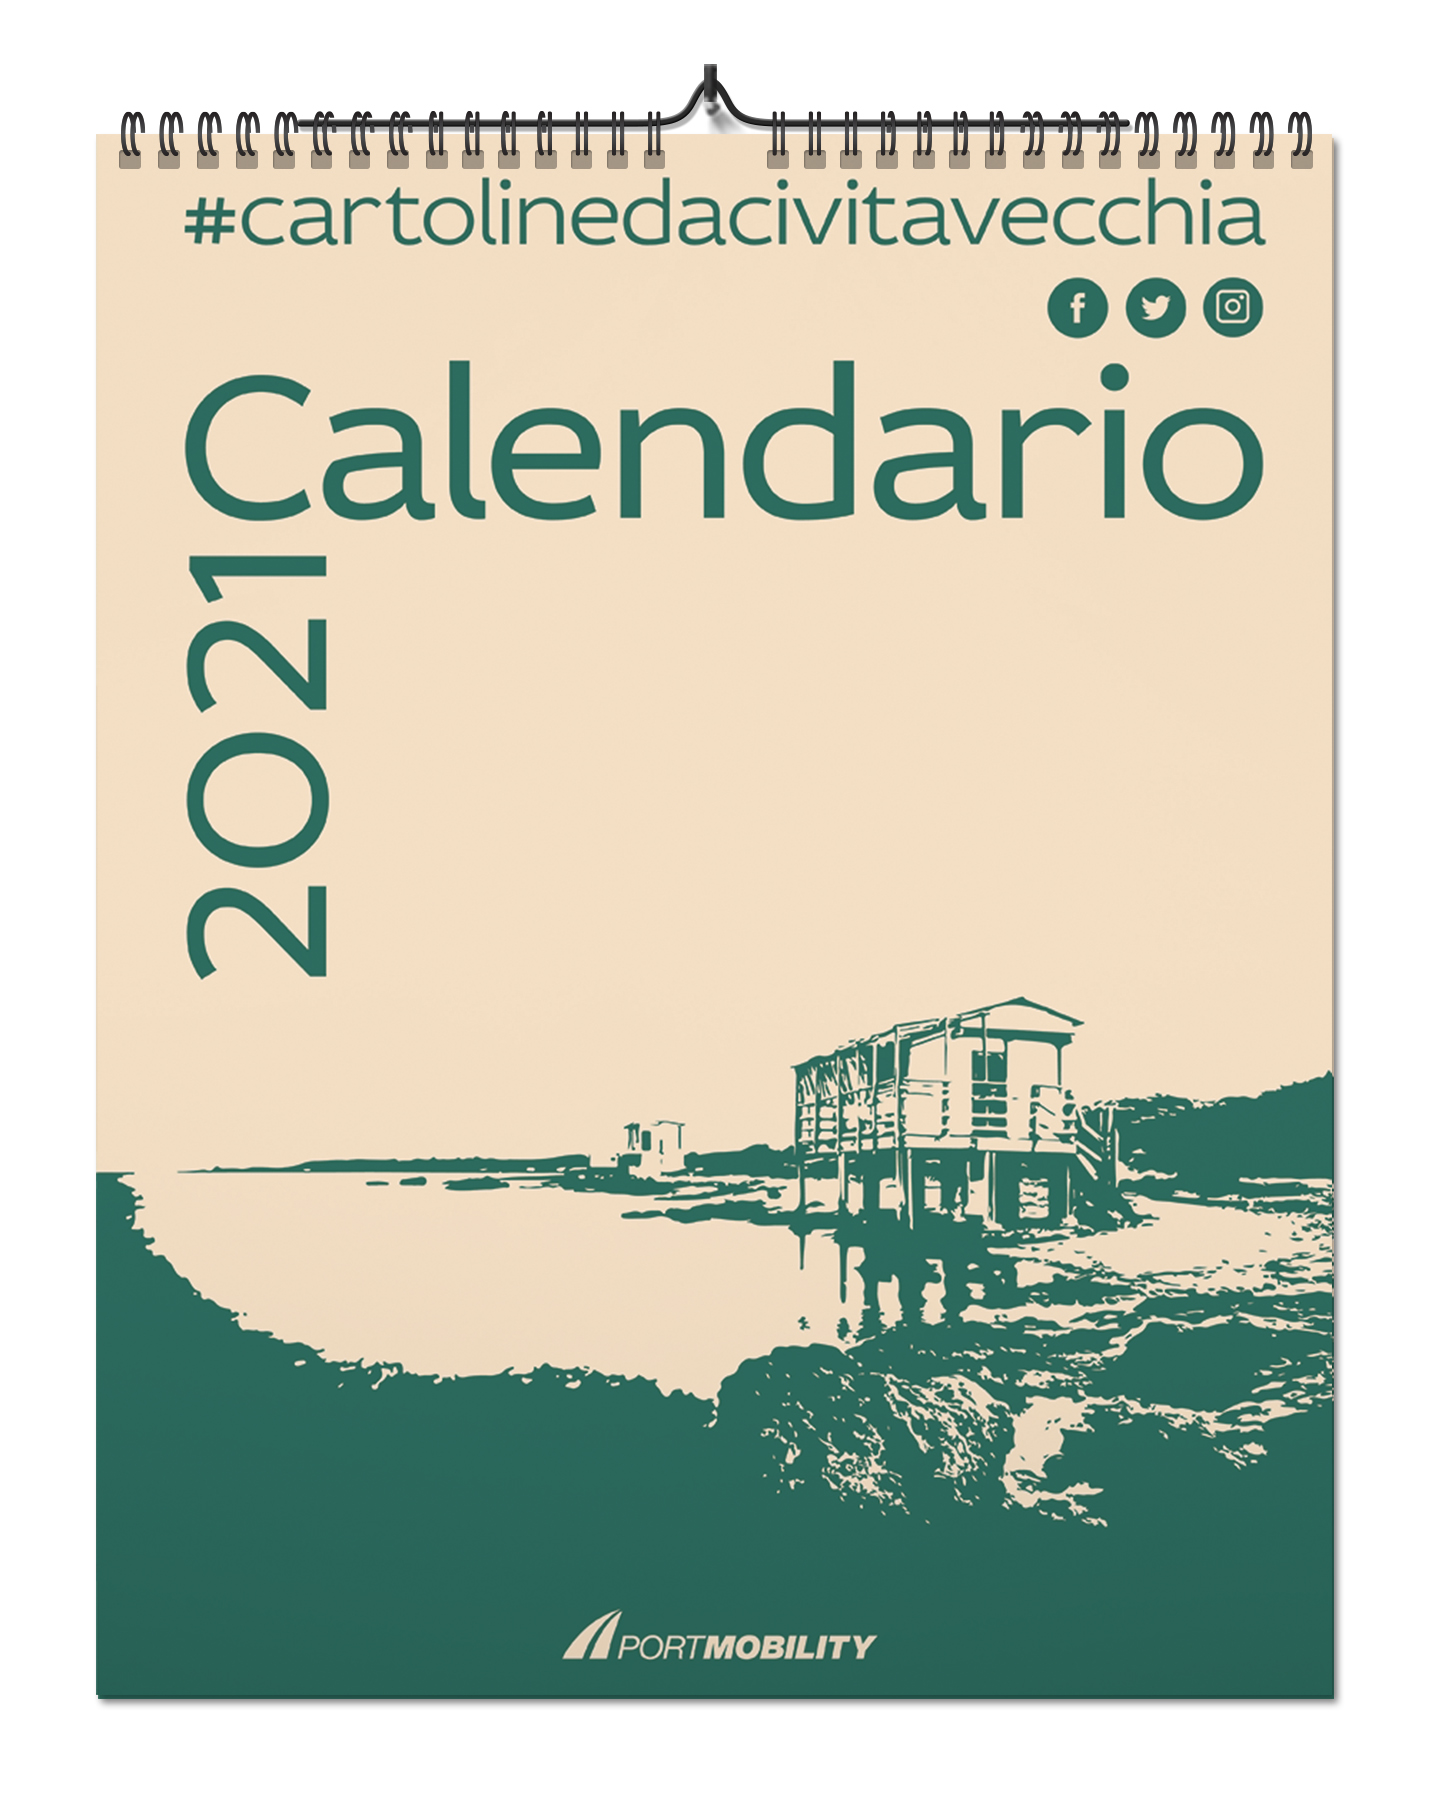 Cartoline da Civitavecchia 2021: la copertina del calendario